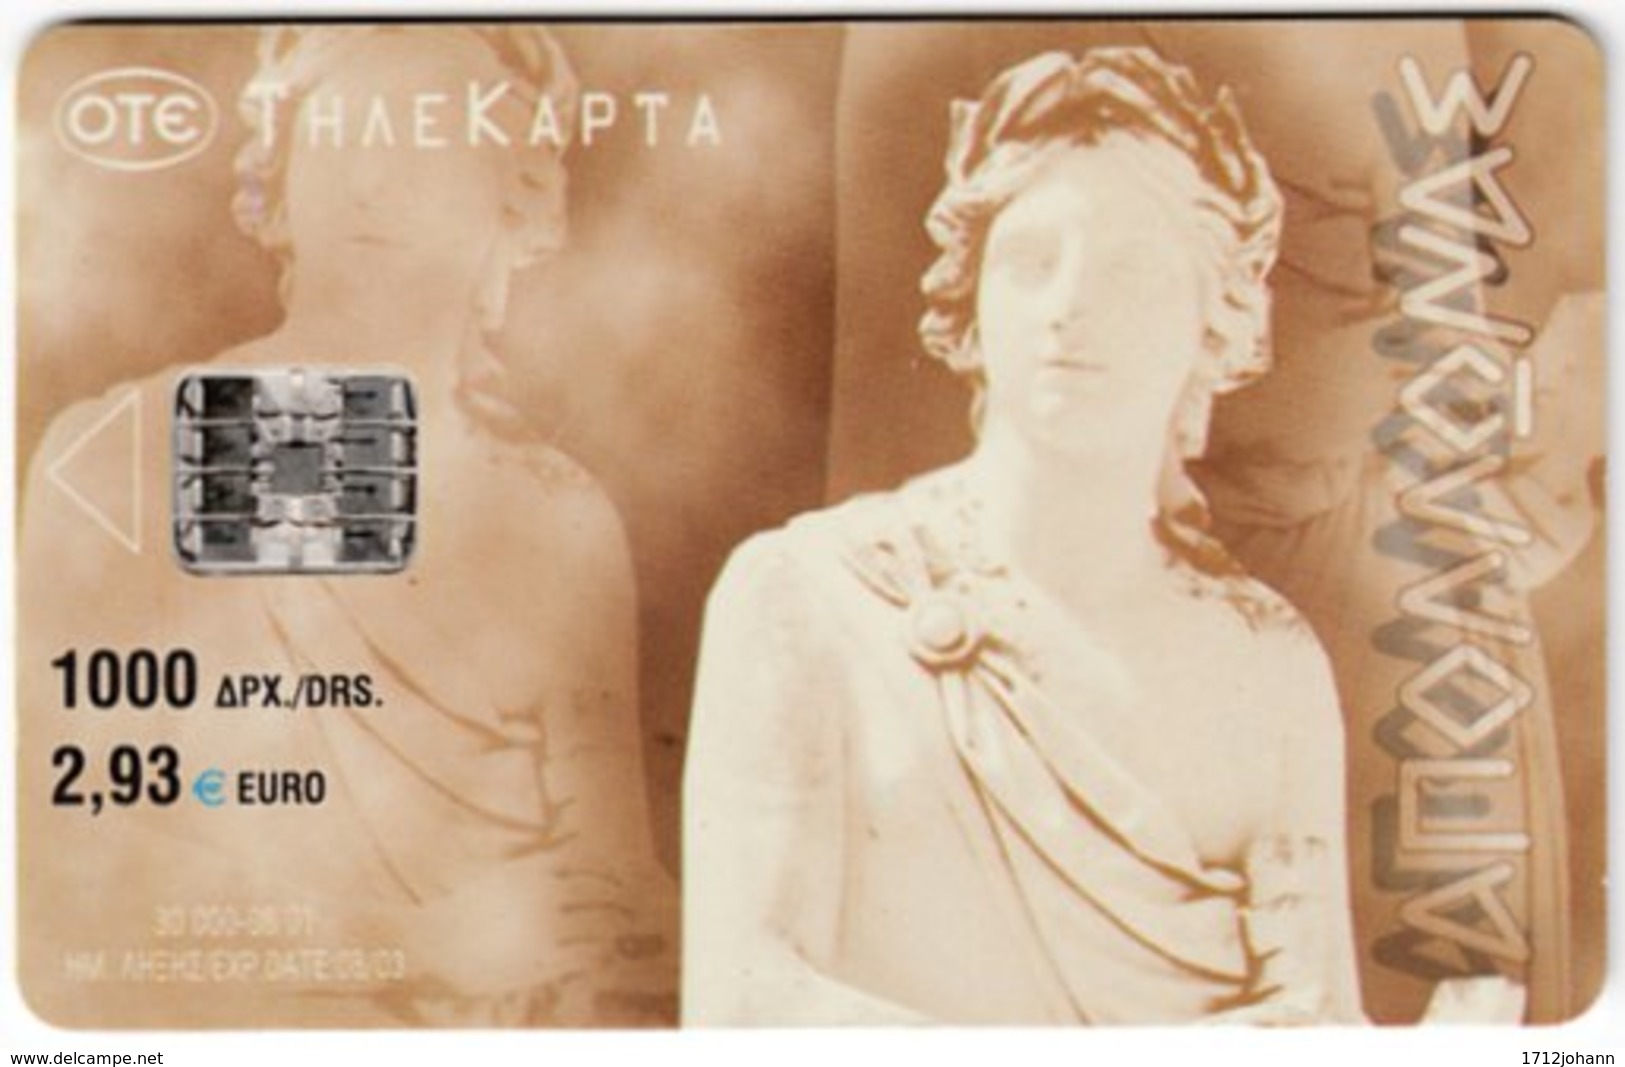 GREECE F-939 Chip OTE - Culture, Statue - Used - Greece